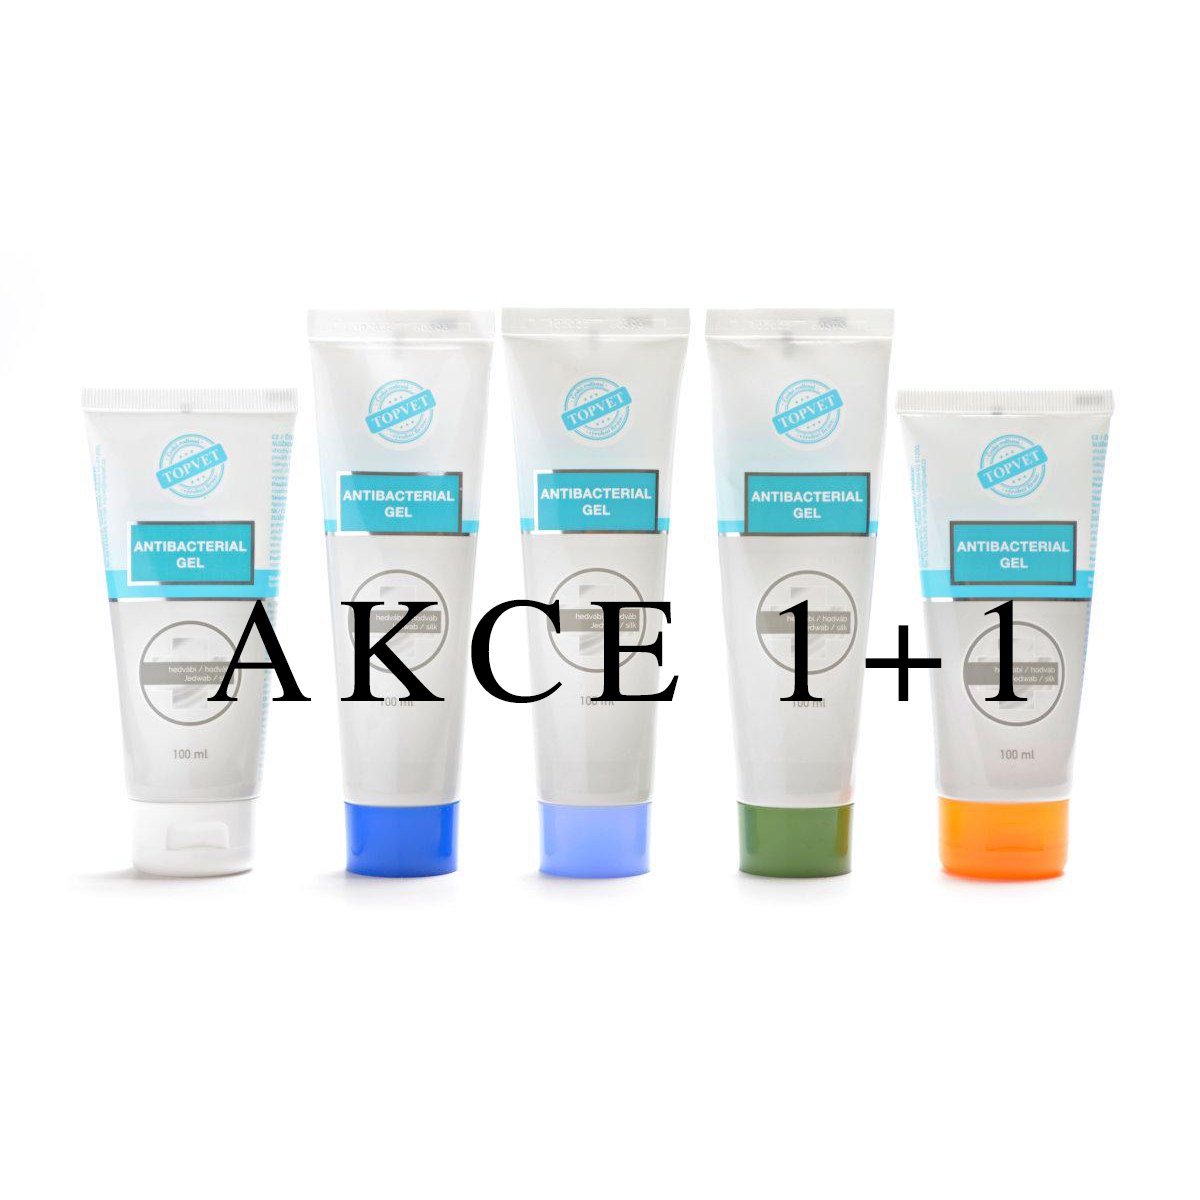 AKCE - Čisticí gel na ruce s antimikrobiální složkou v tubě 1+1 - Hedvábí